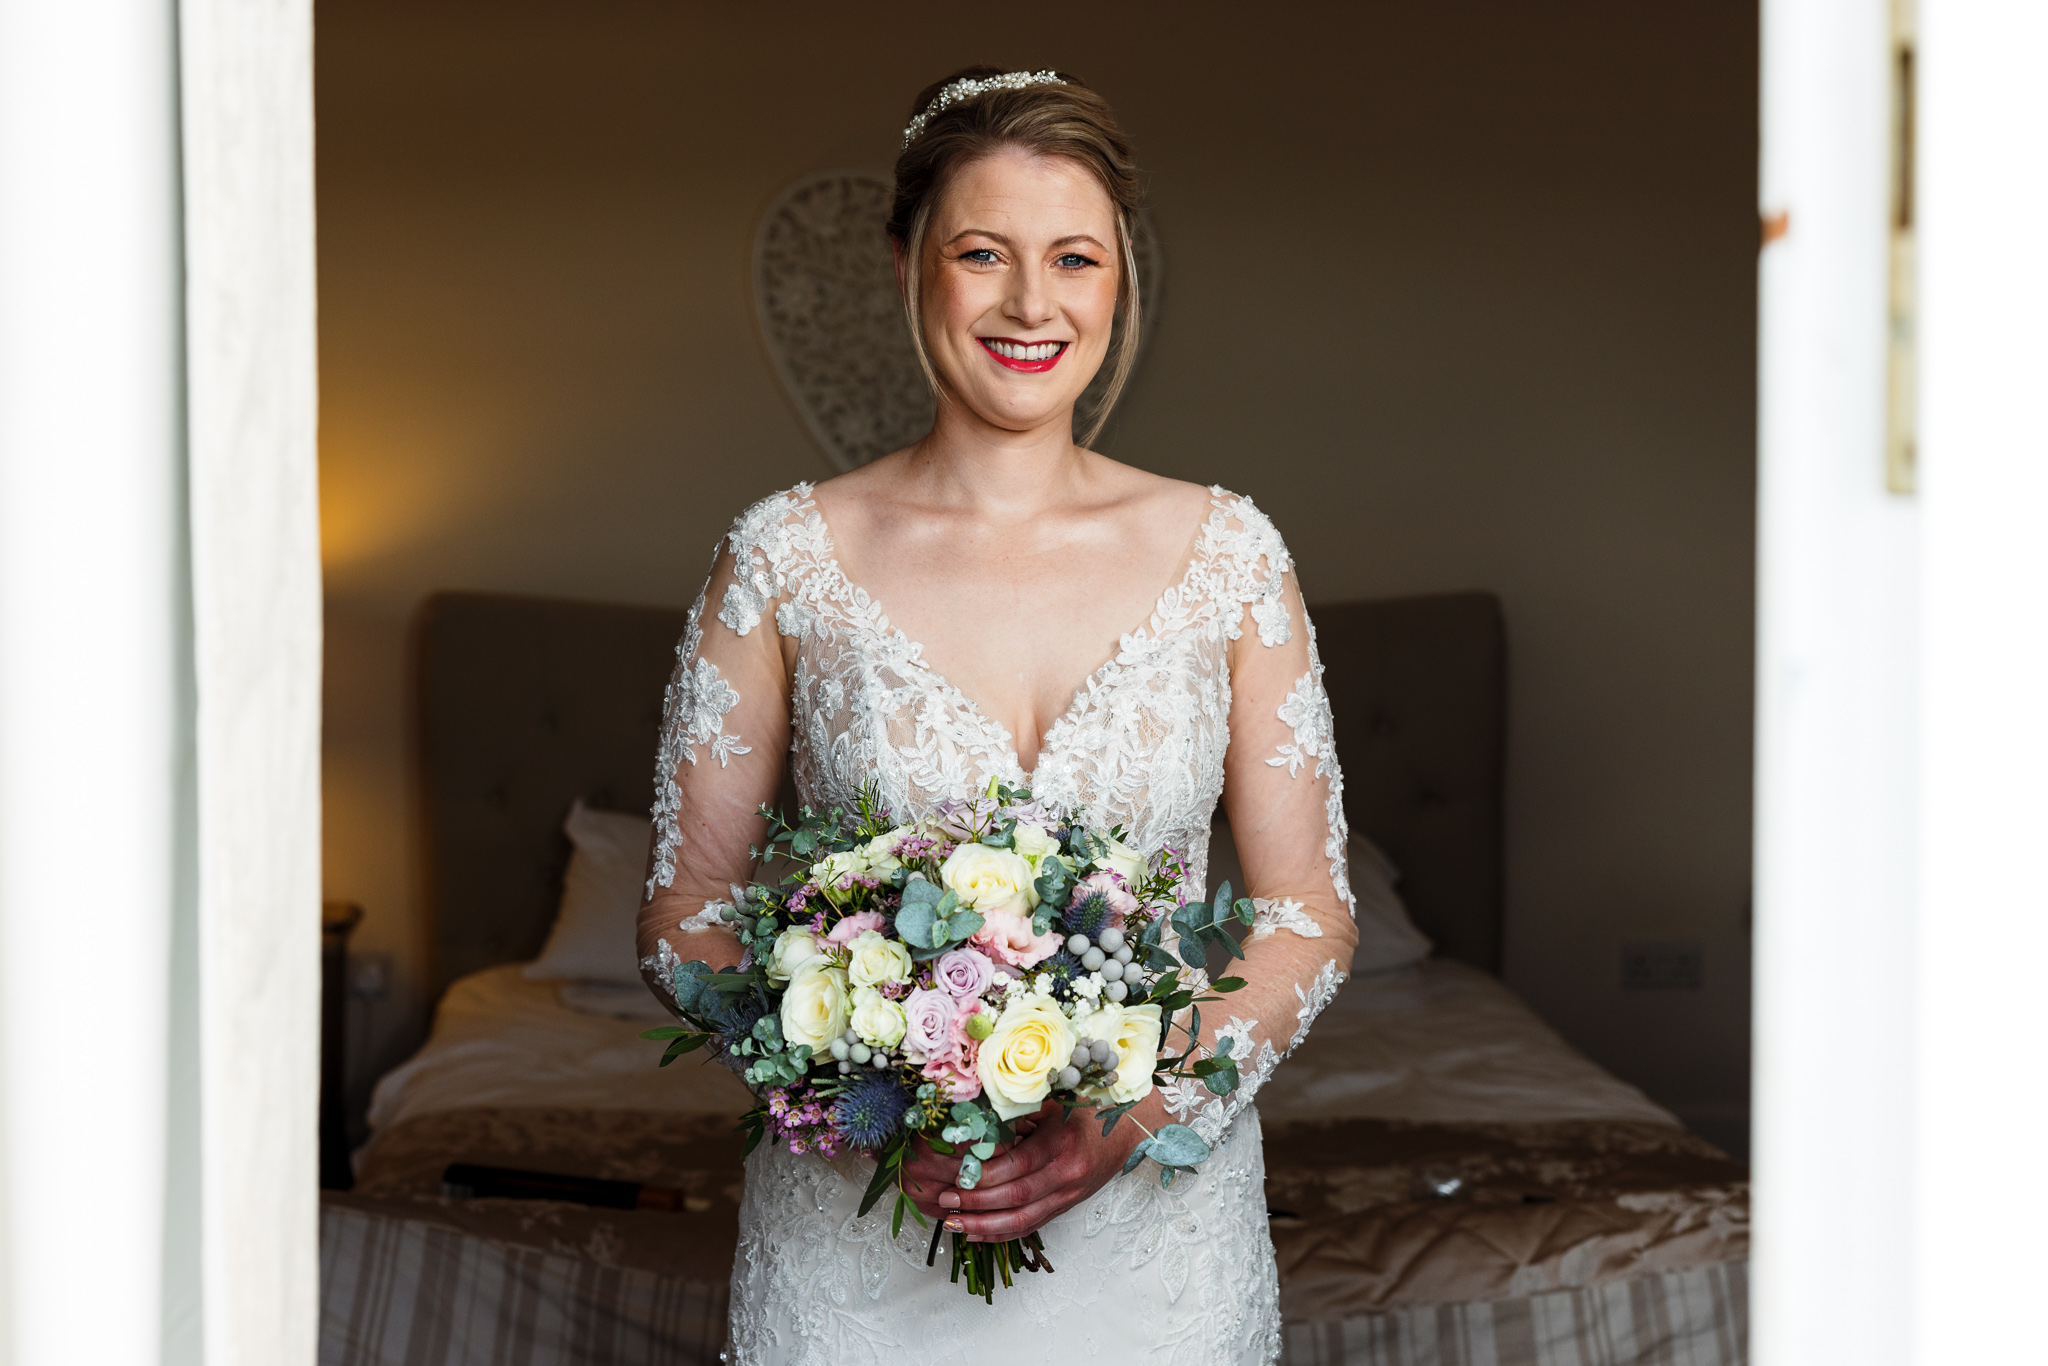 Caer Llan Wedding - Bride